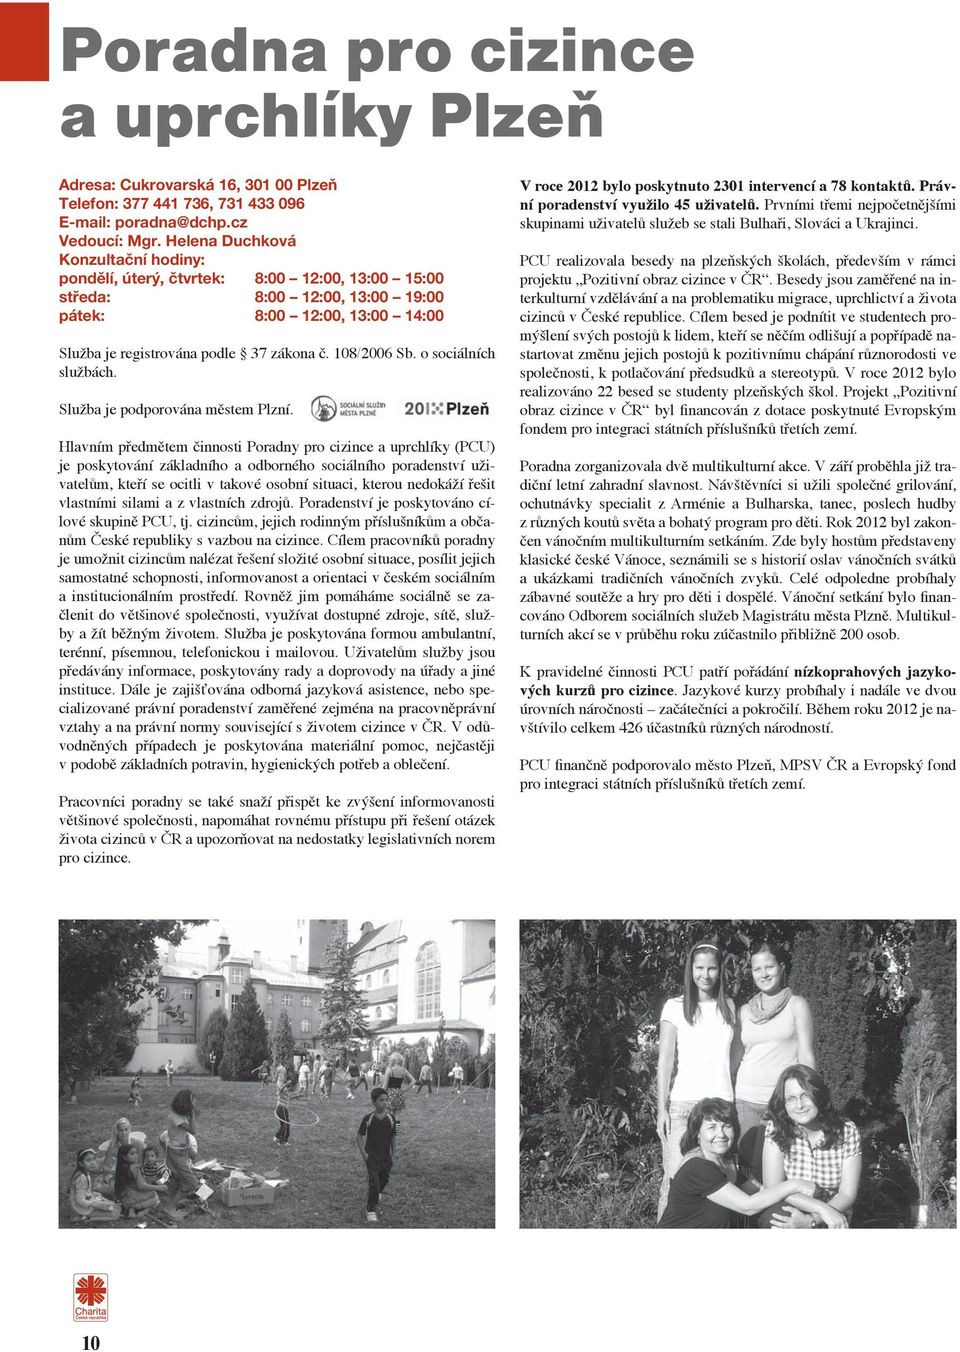 108/2006 Sb. o sociálních službách. Služba je podporována městem Plzní.